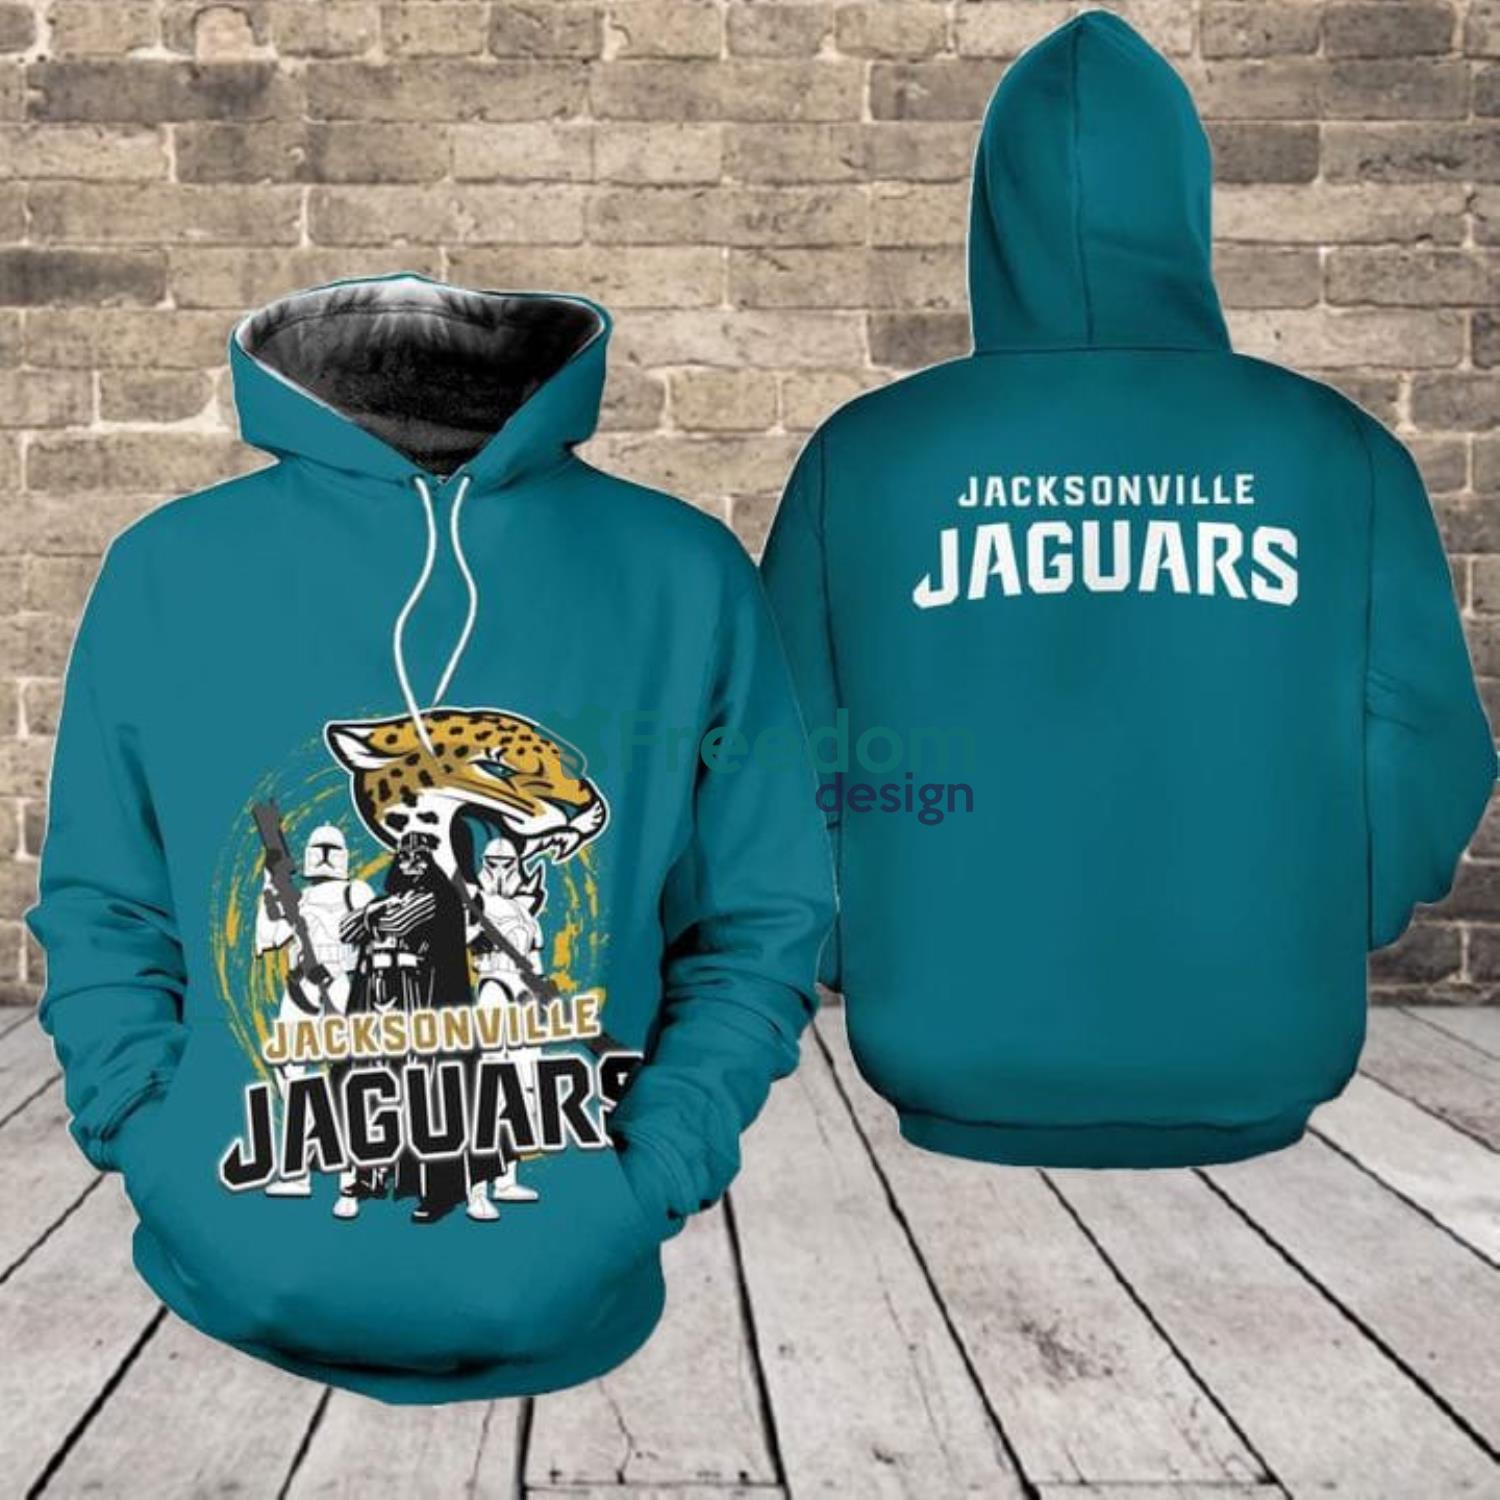 jaguars teal hoodie